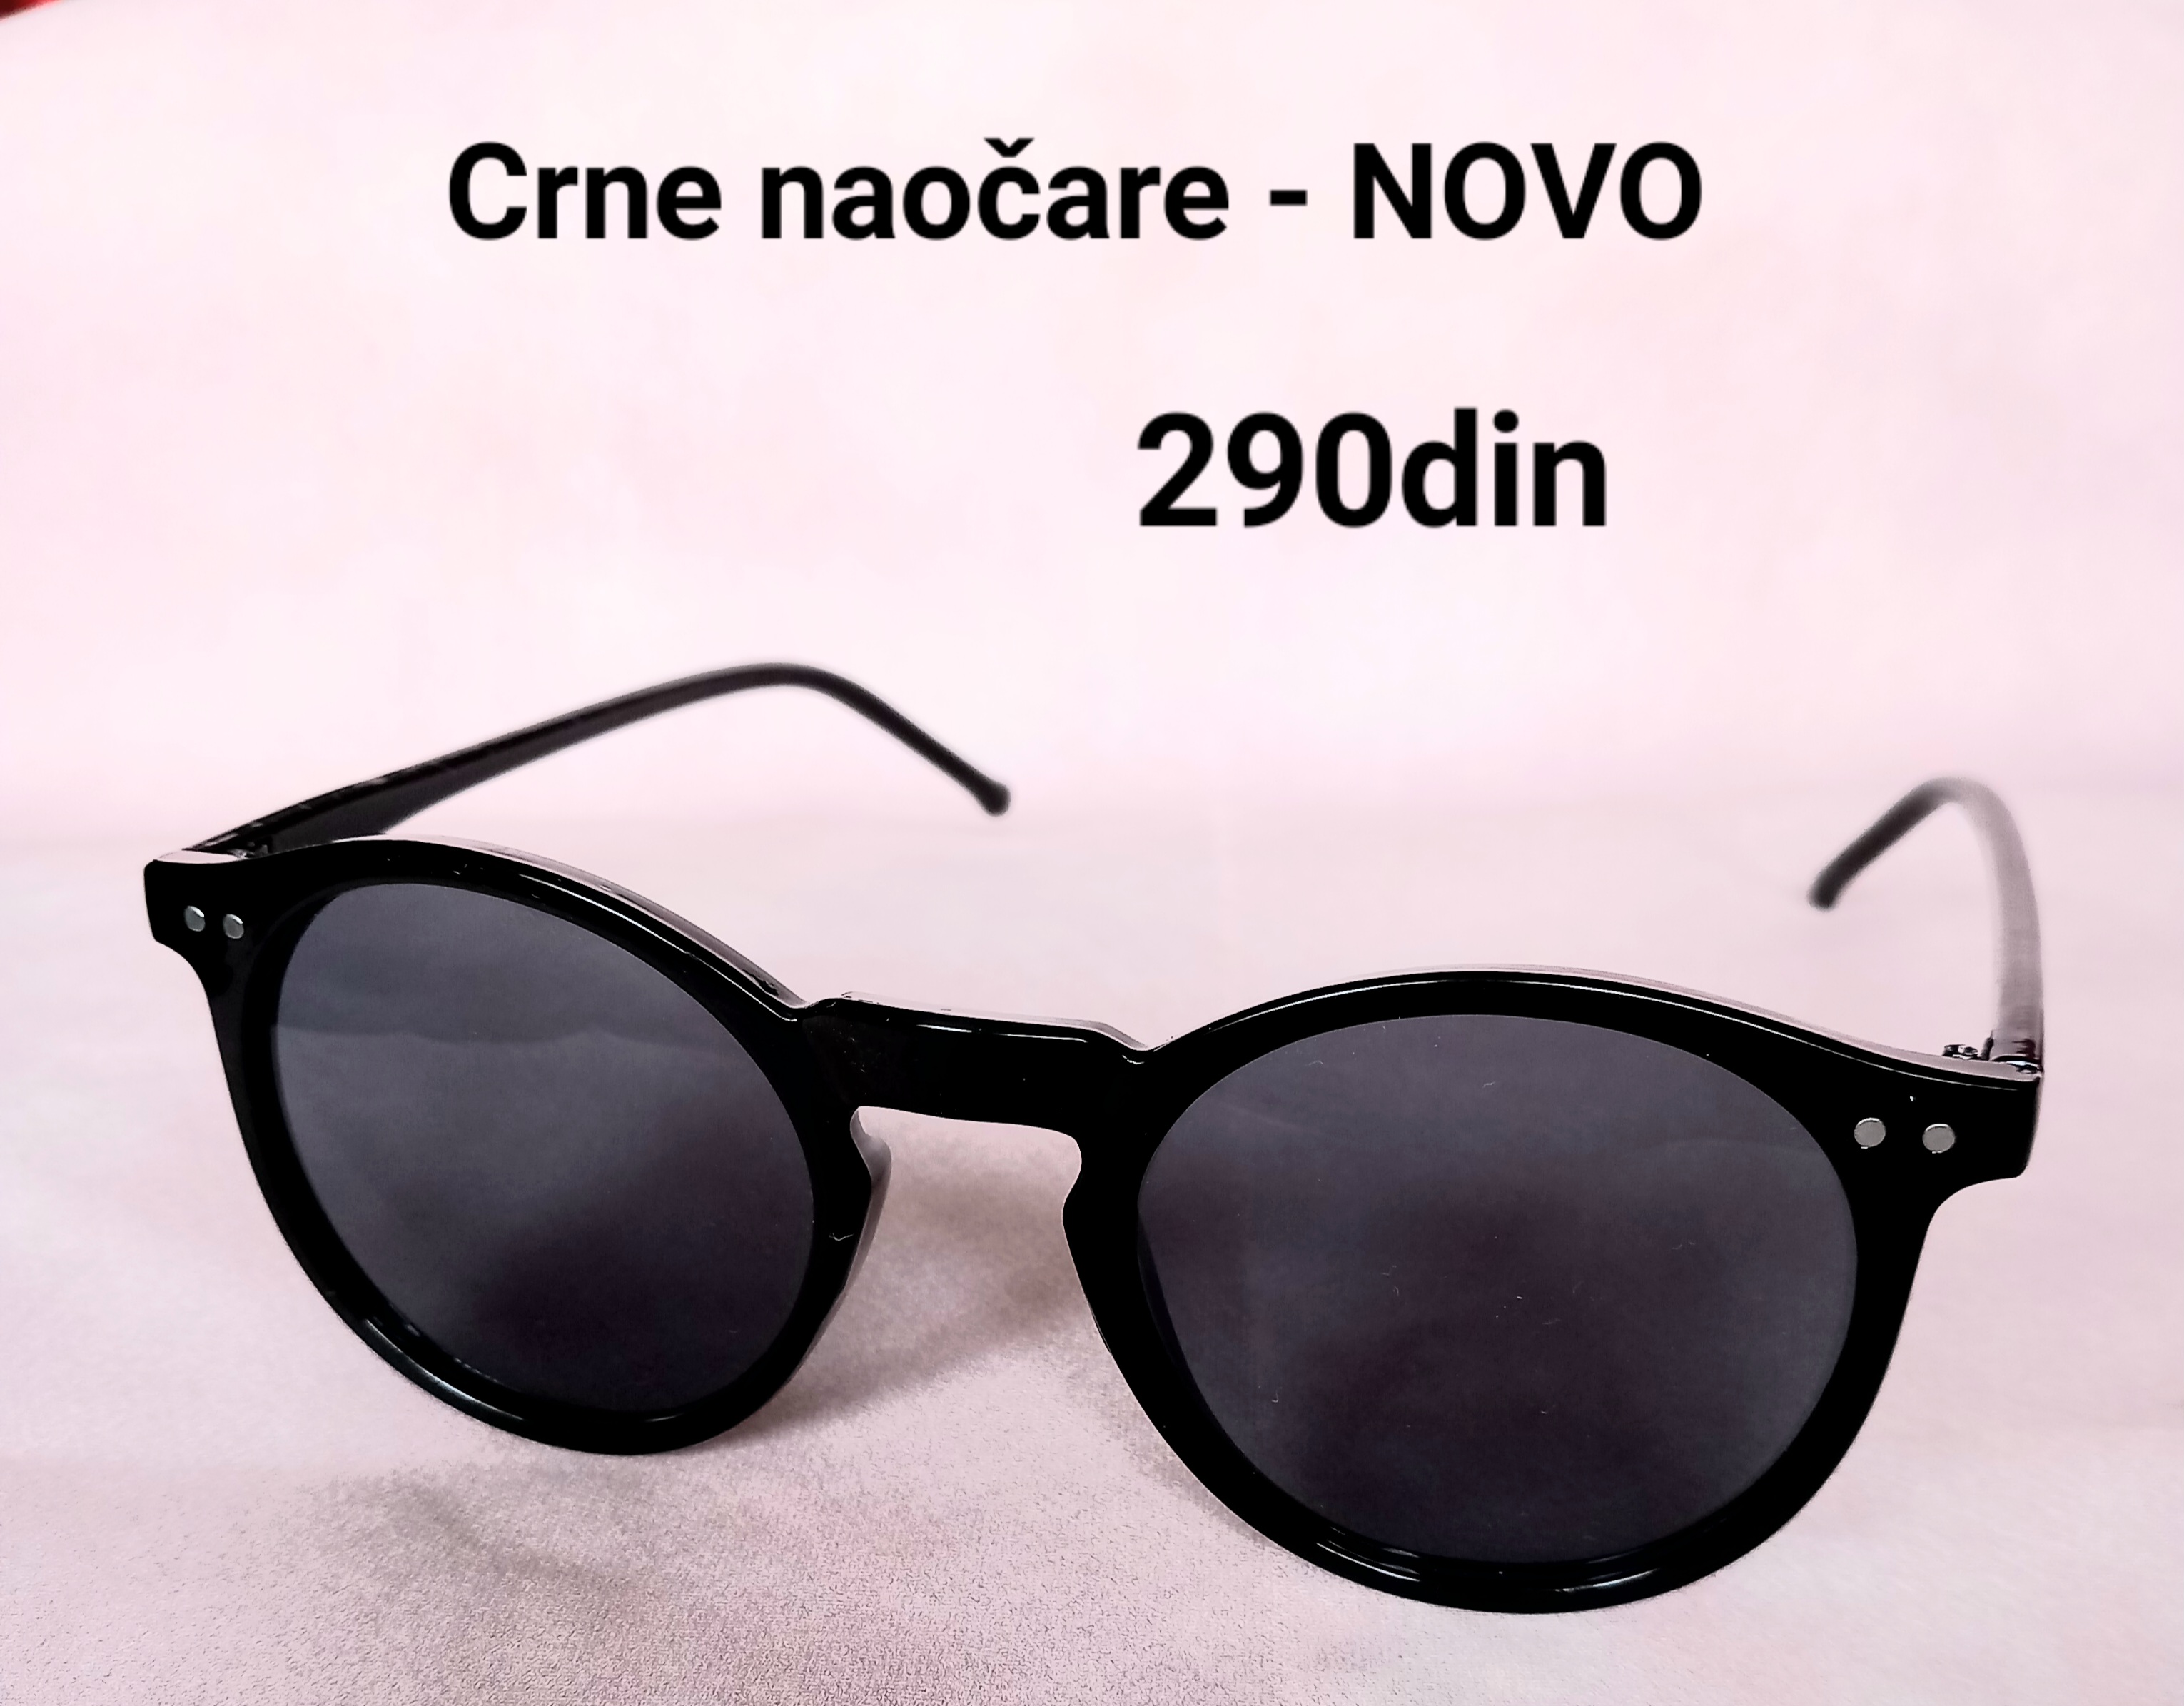 Naočare za sunce crne boje - NOVO